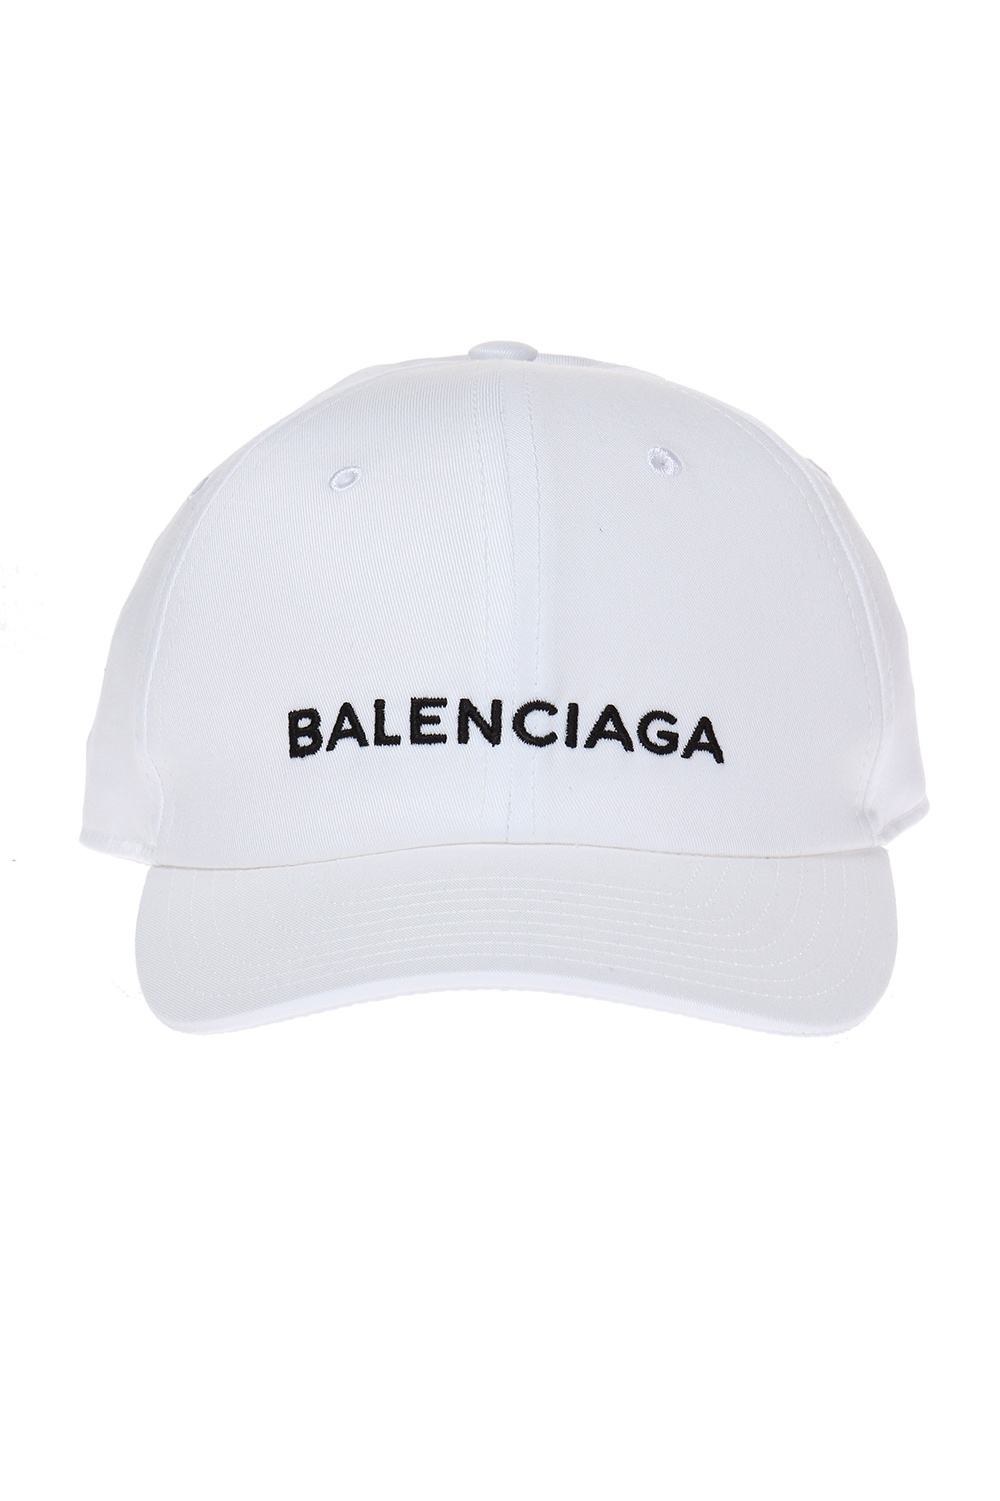 balenciaga logo embroidered cotton cap